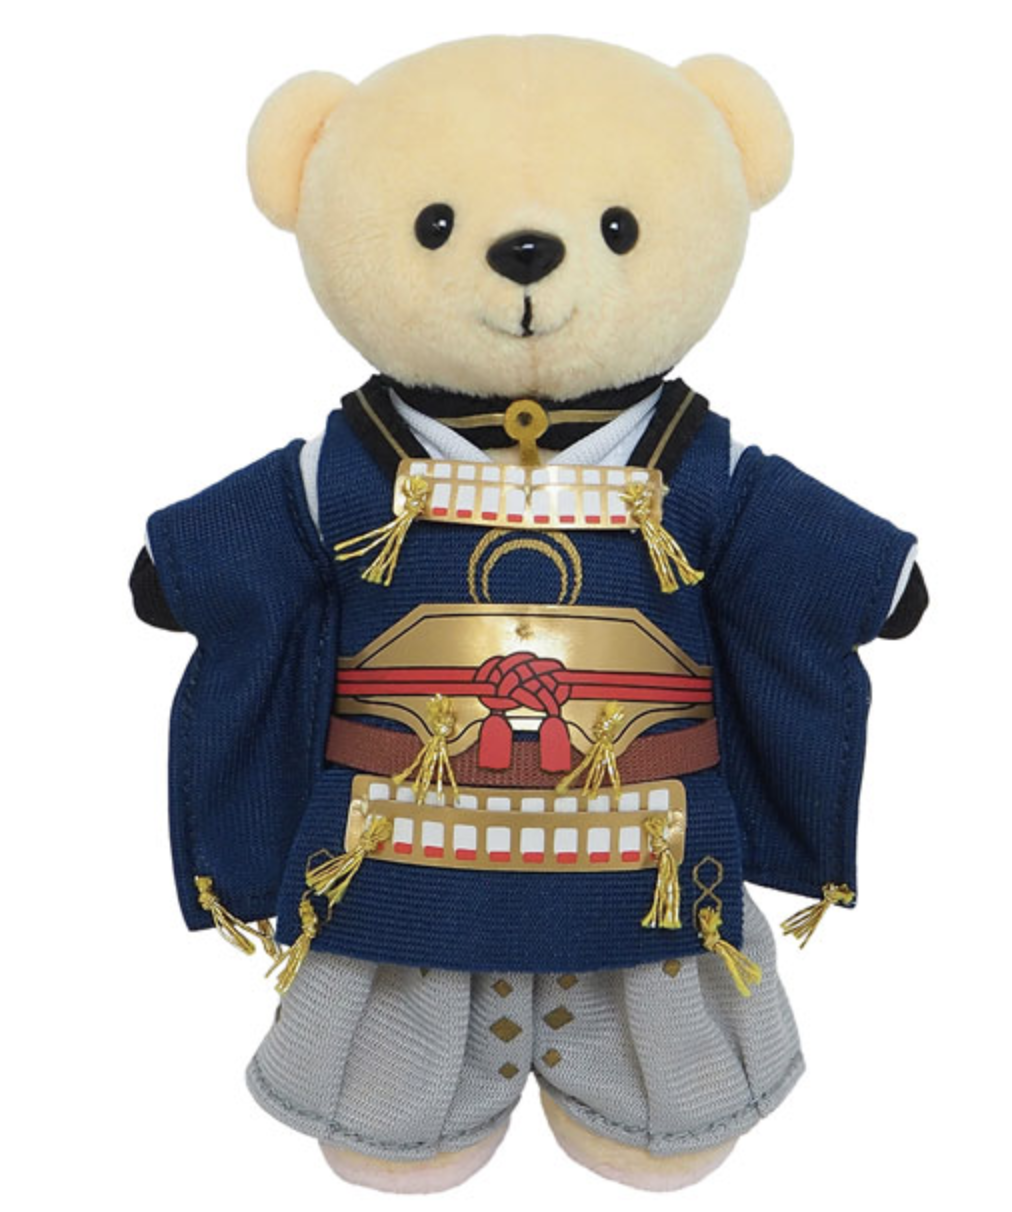 teddy bear dolls buy online